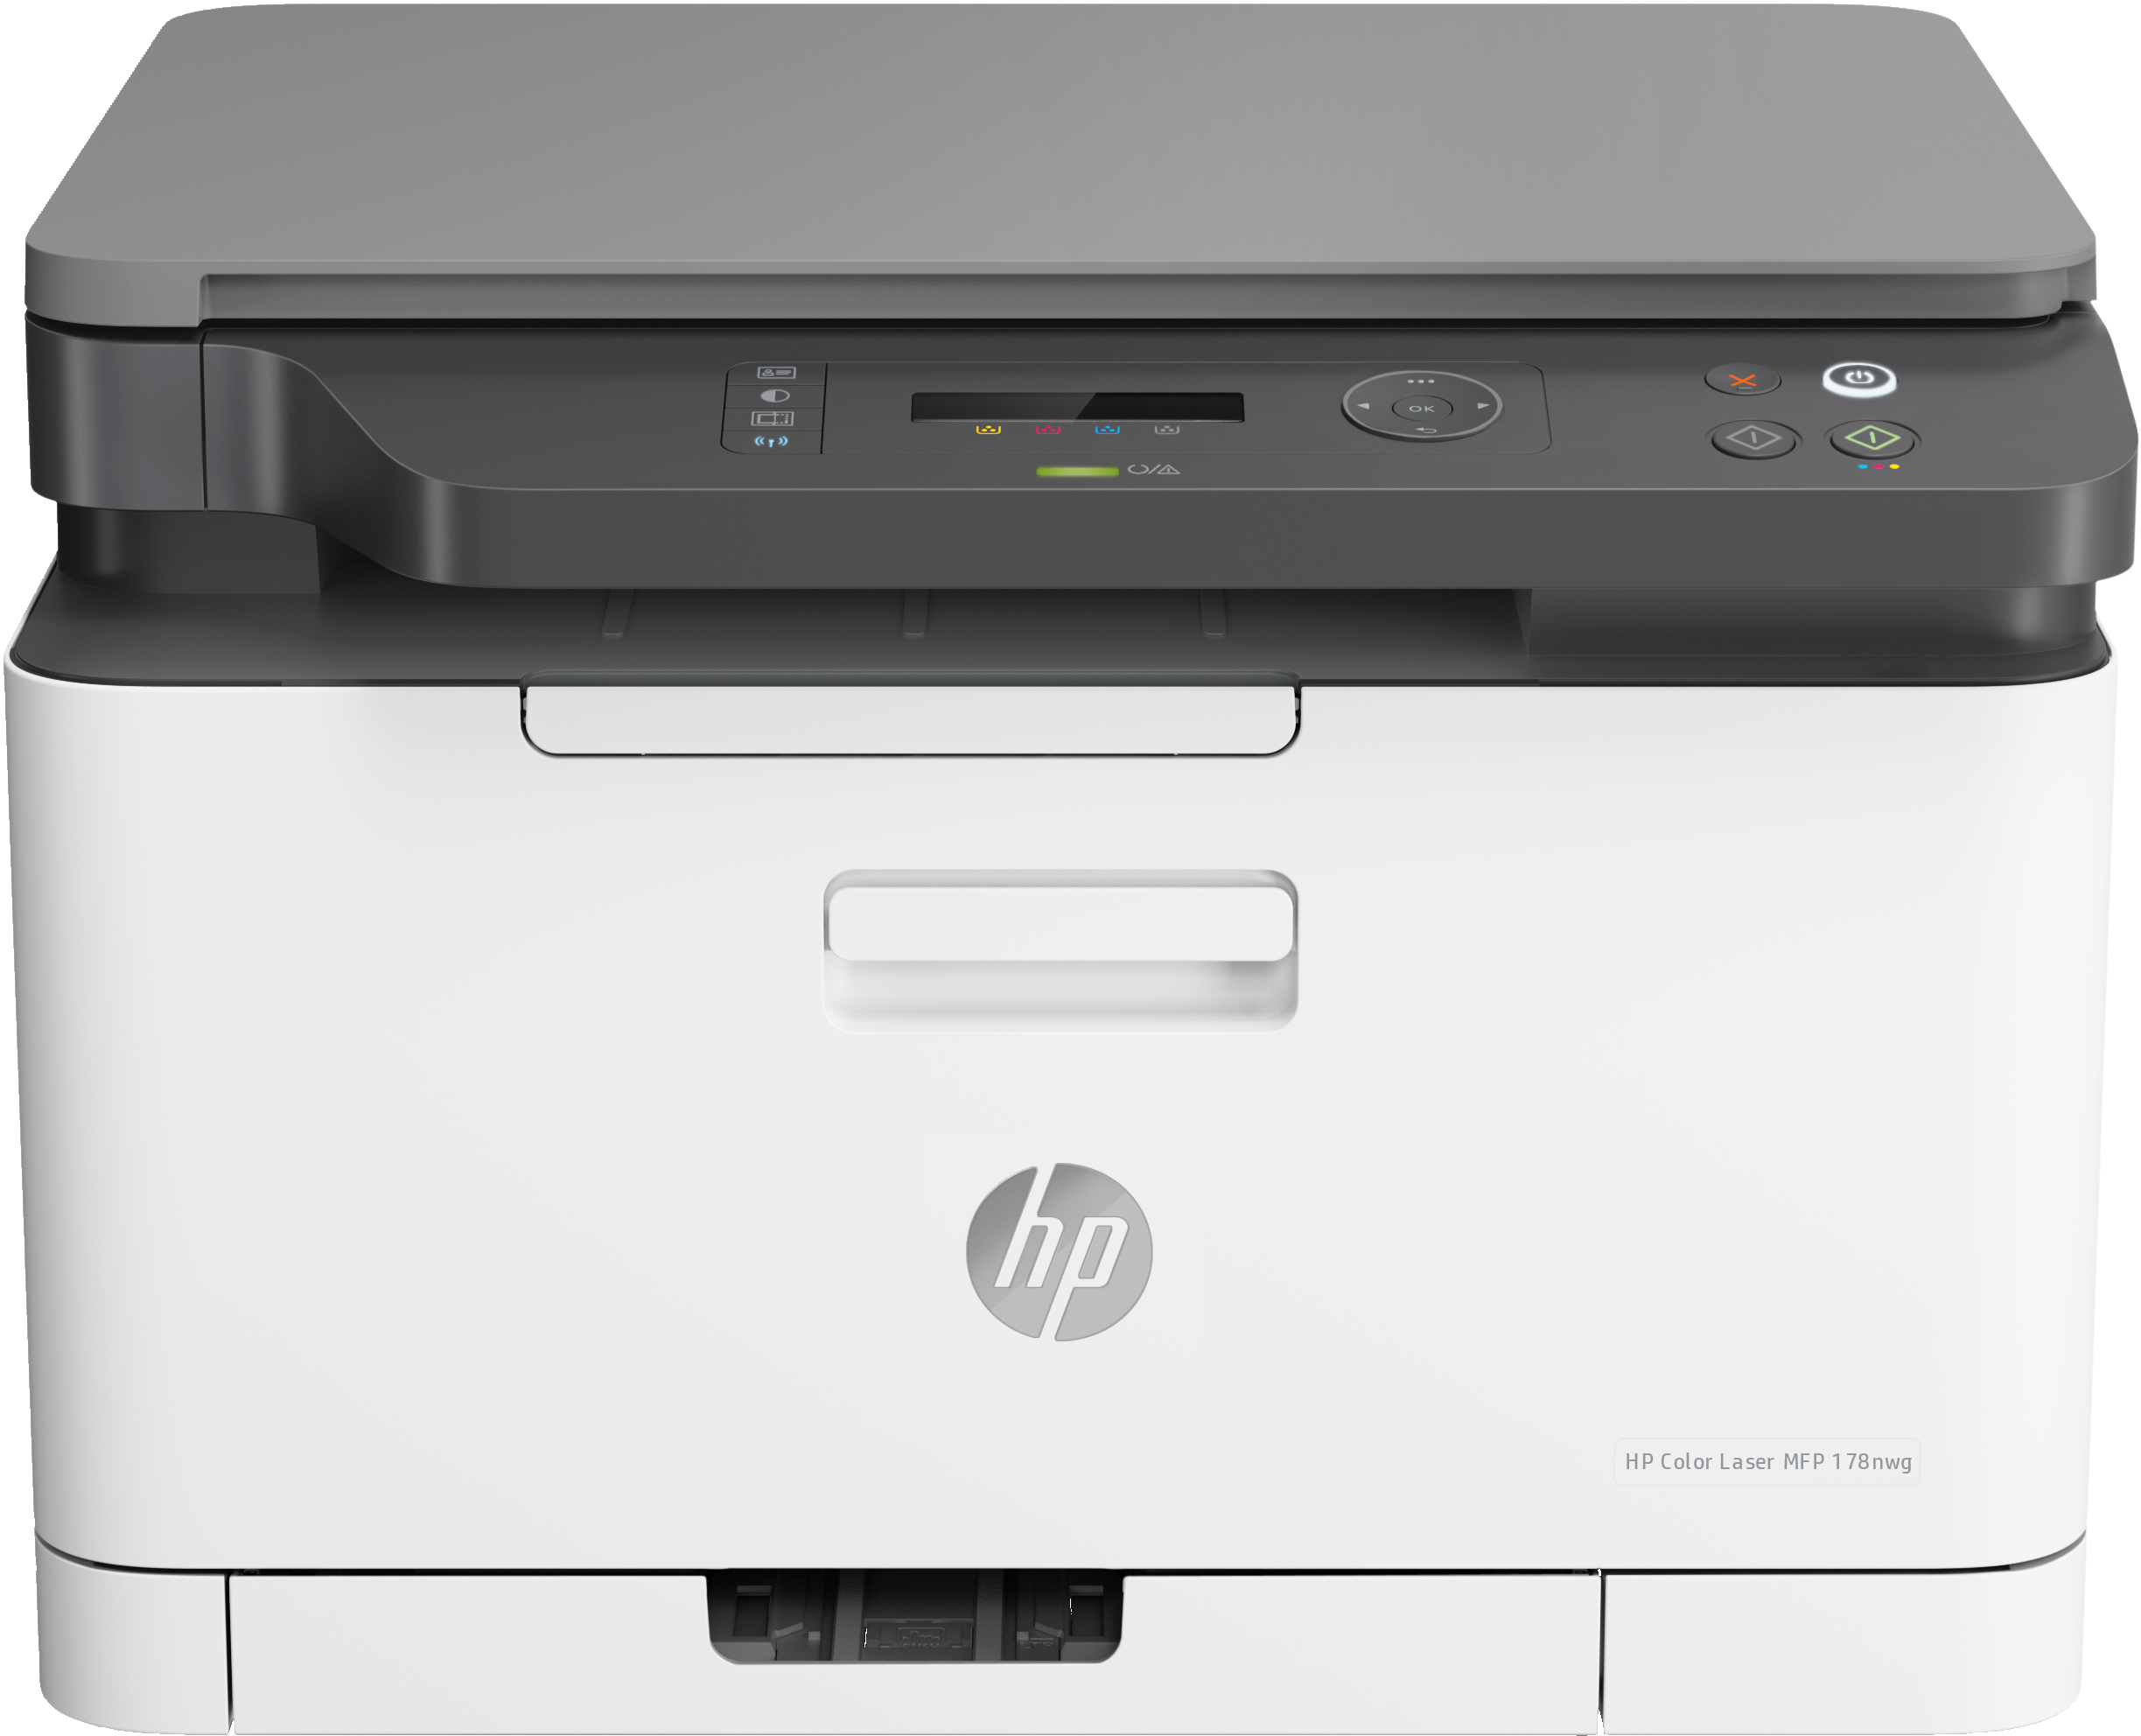 HP Color Laser MFP 178nw, Färg, Skrivare för Skriv ut, kopiera, skanna, Skanna till PDF